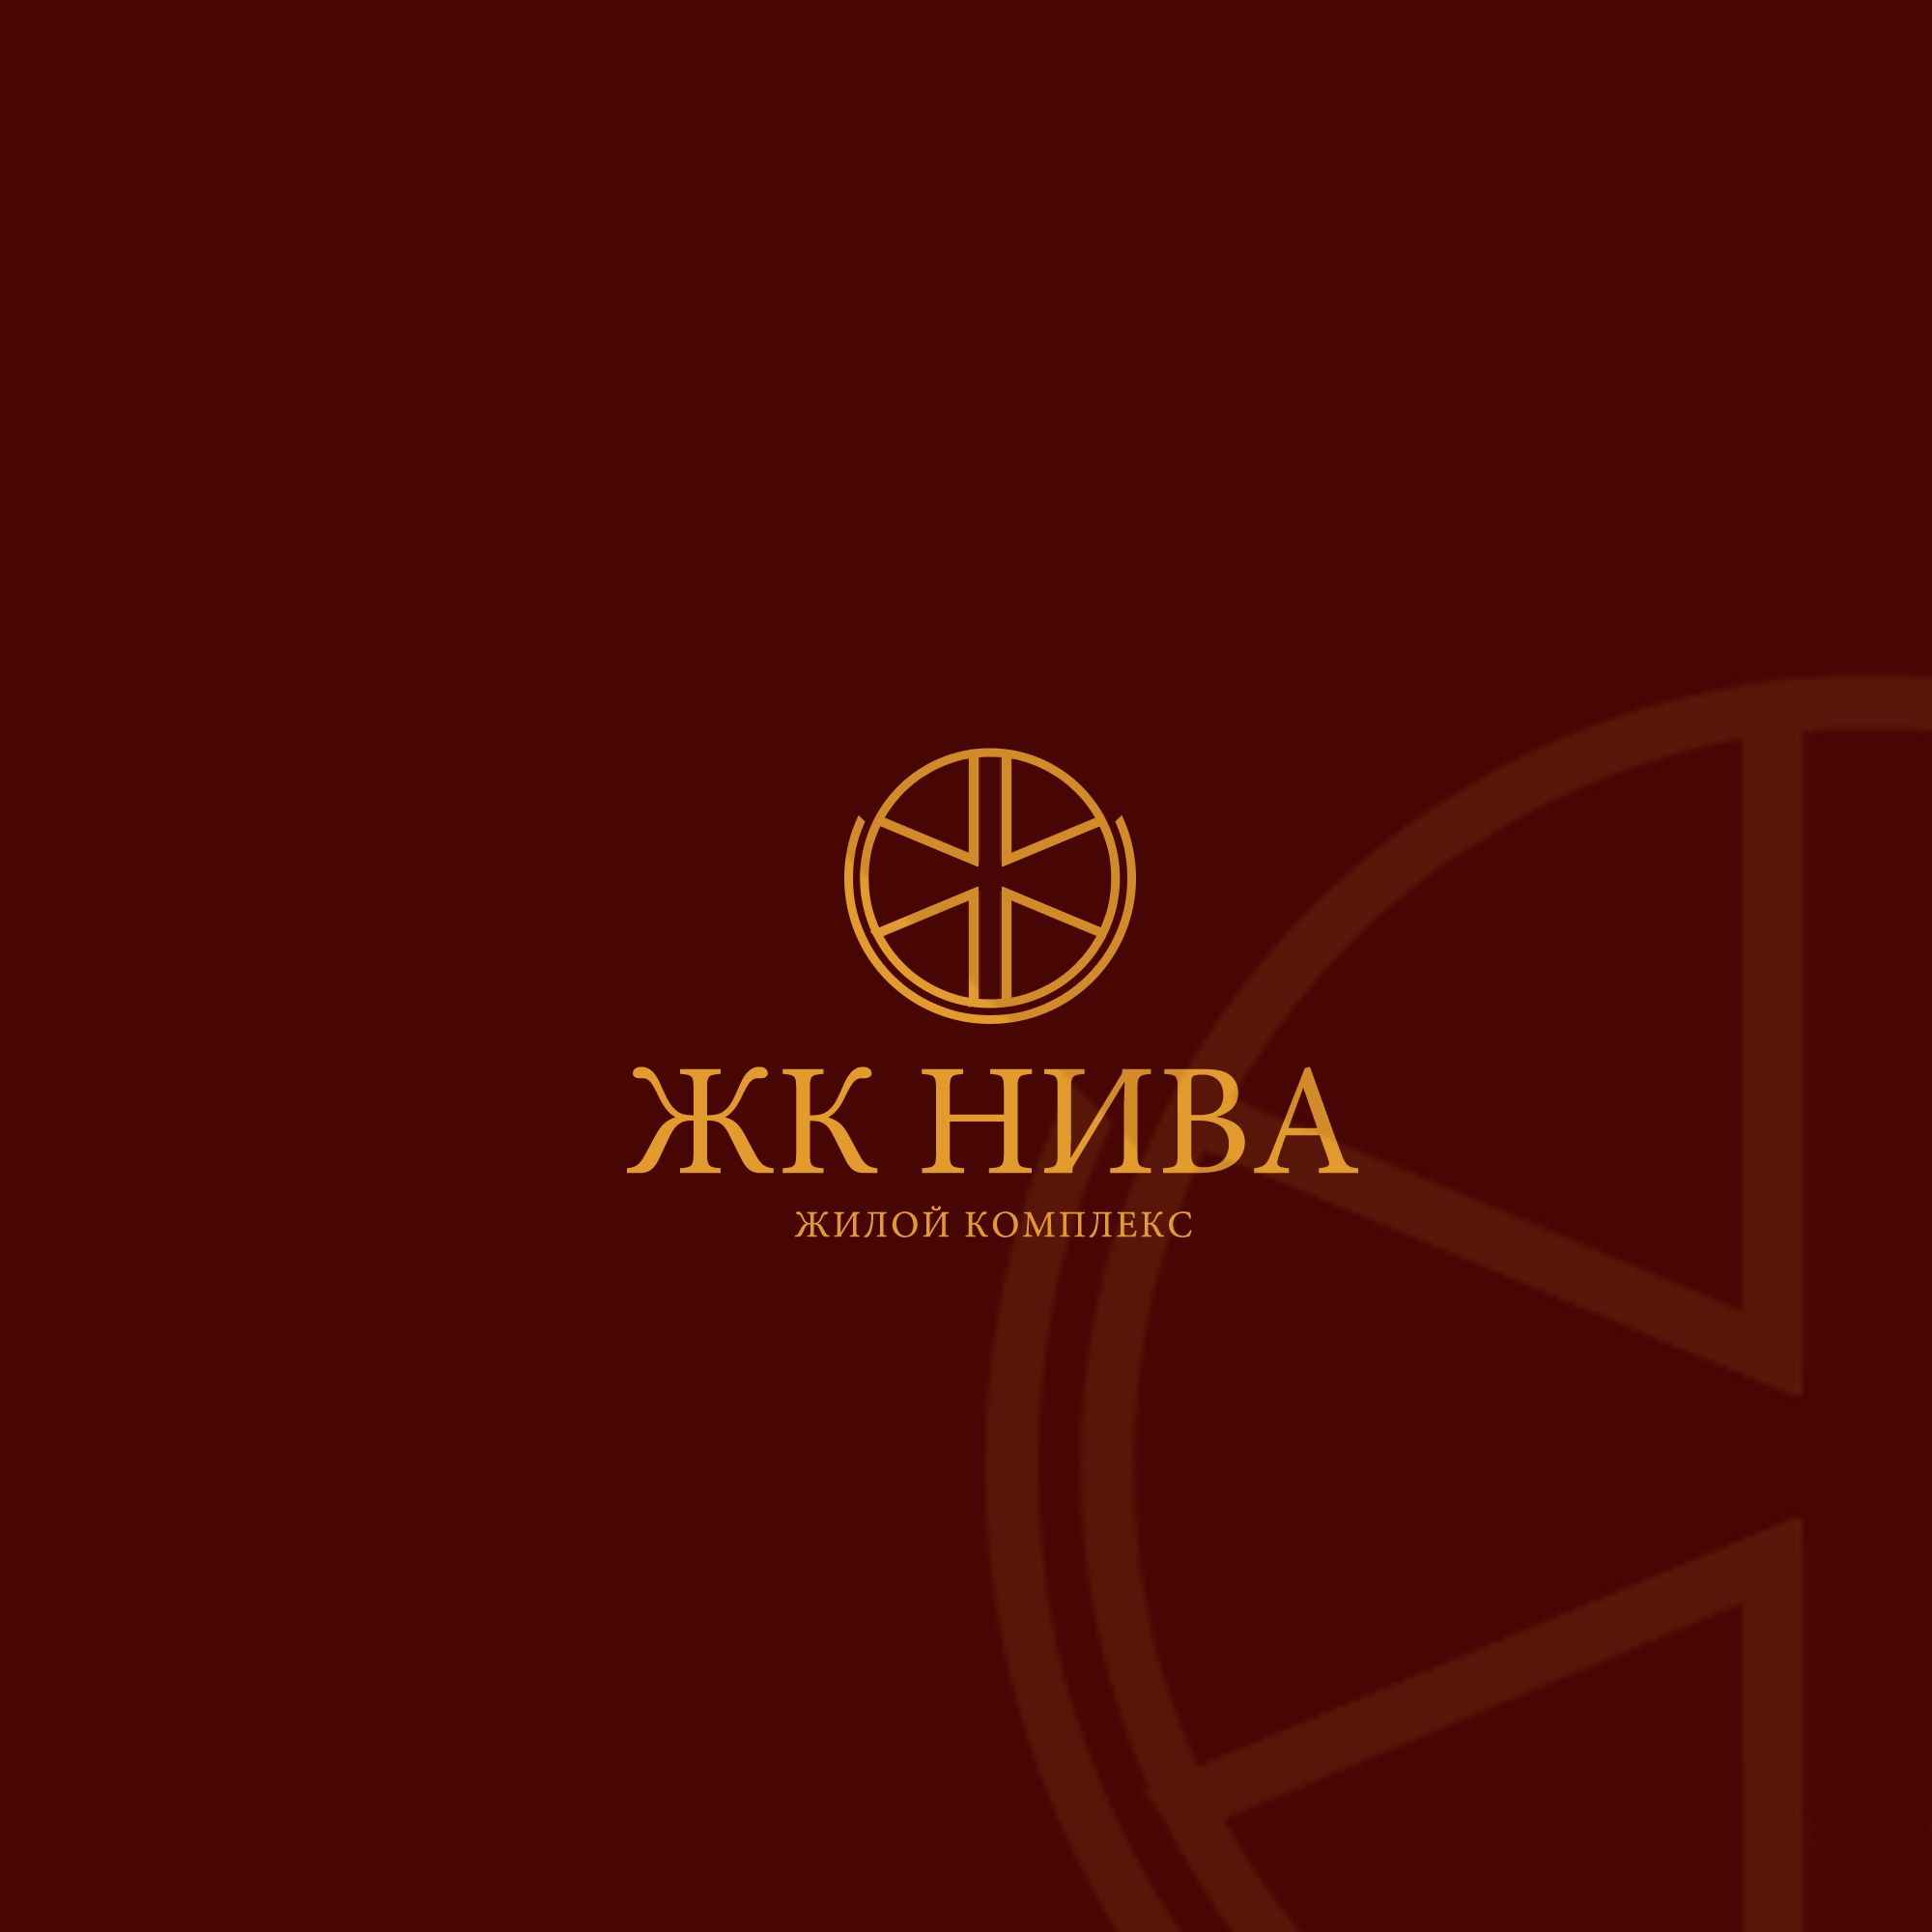 Лого и фирменный стиль для ЖК Нива - дизайнер weste32